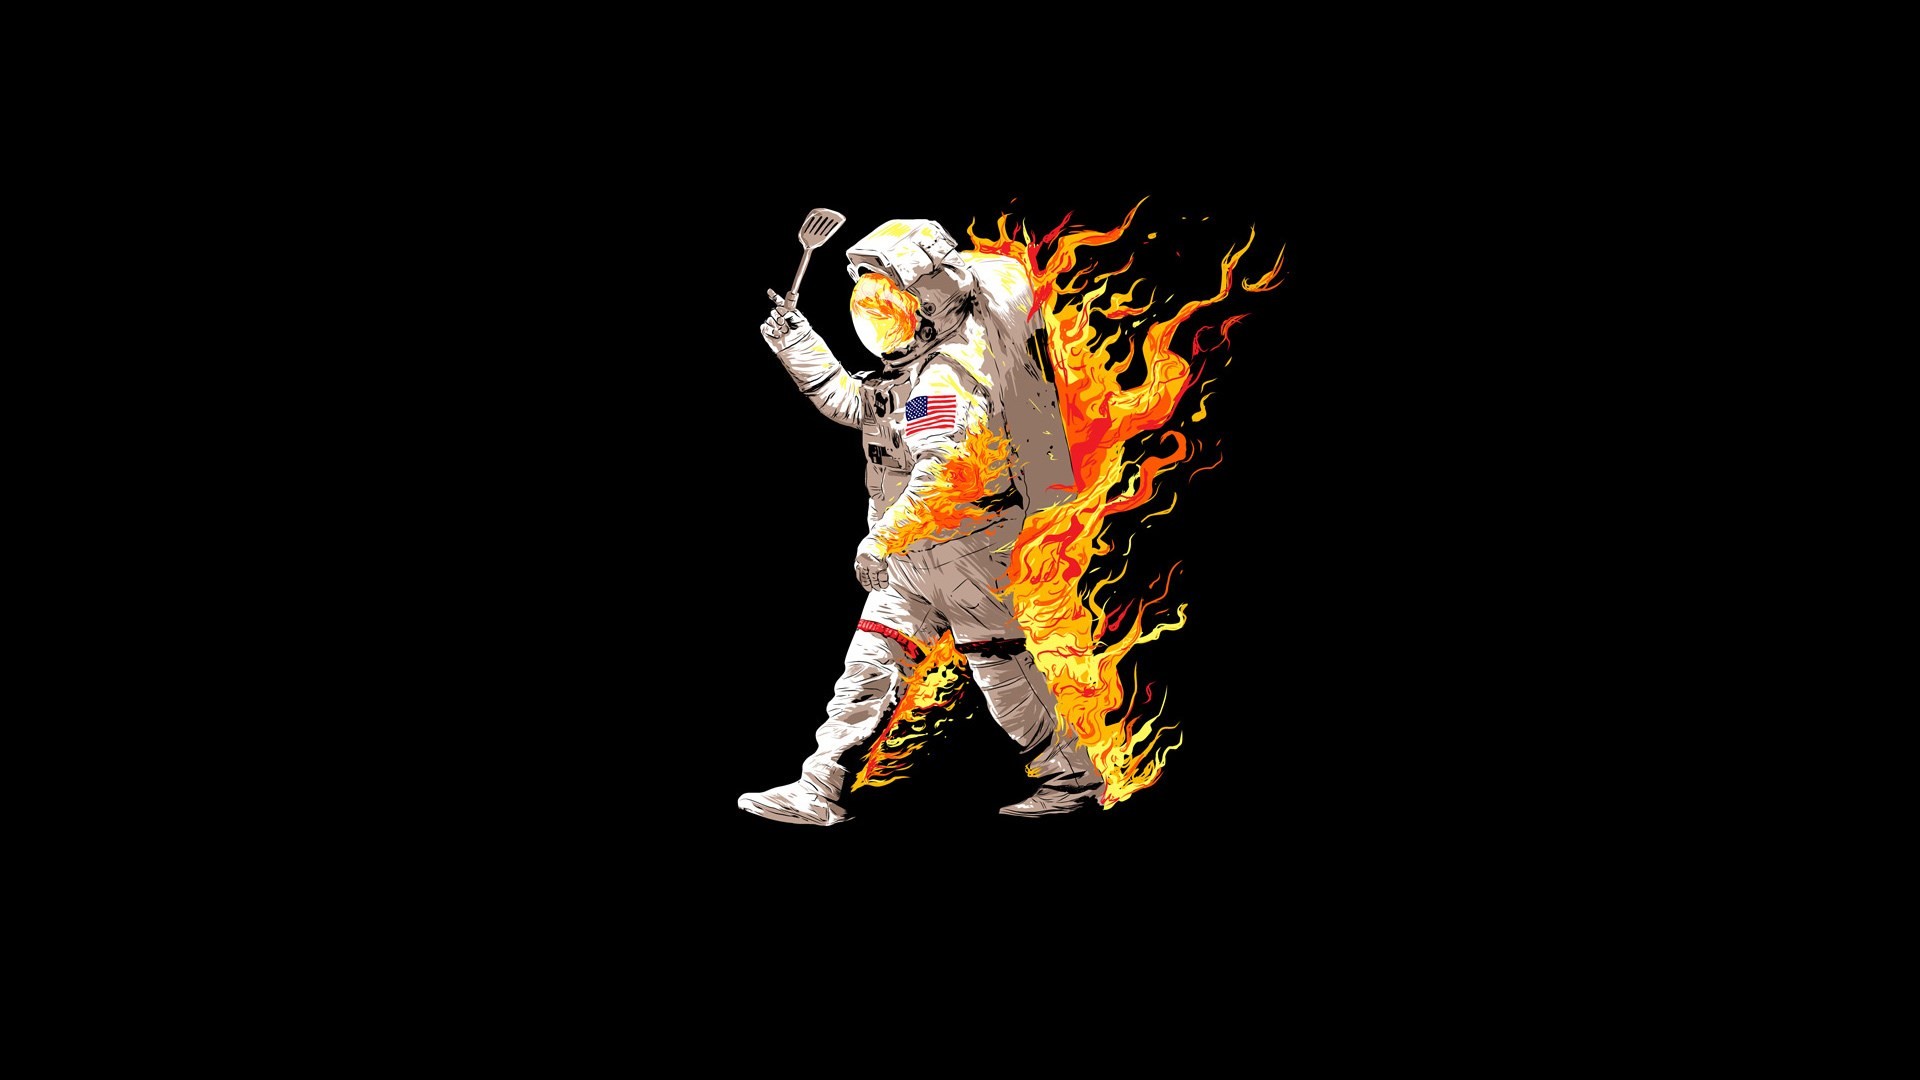 1920x1080 #1597818, astronaut category - widescreen wallpaper astronaut